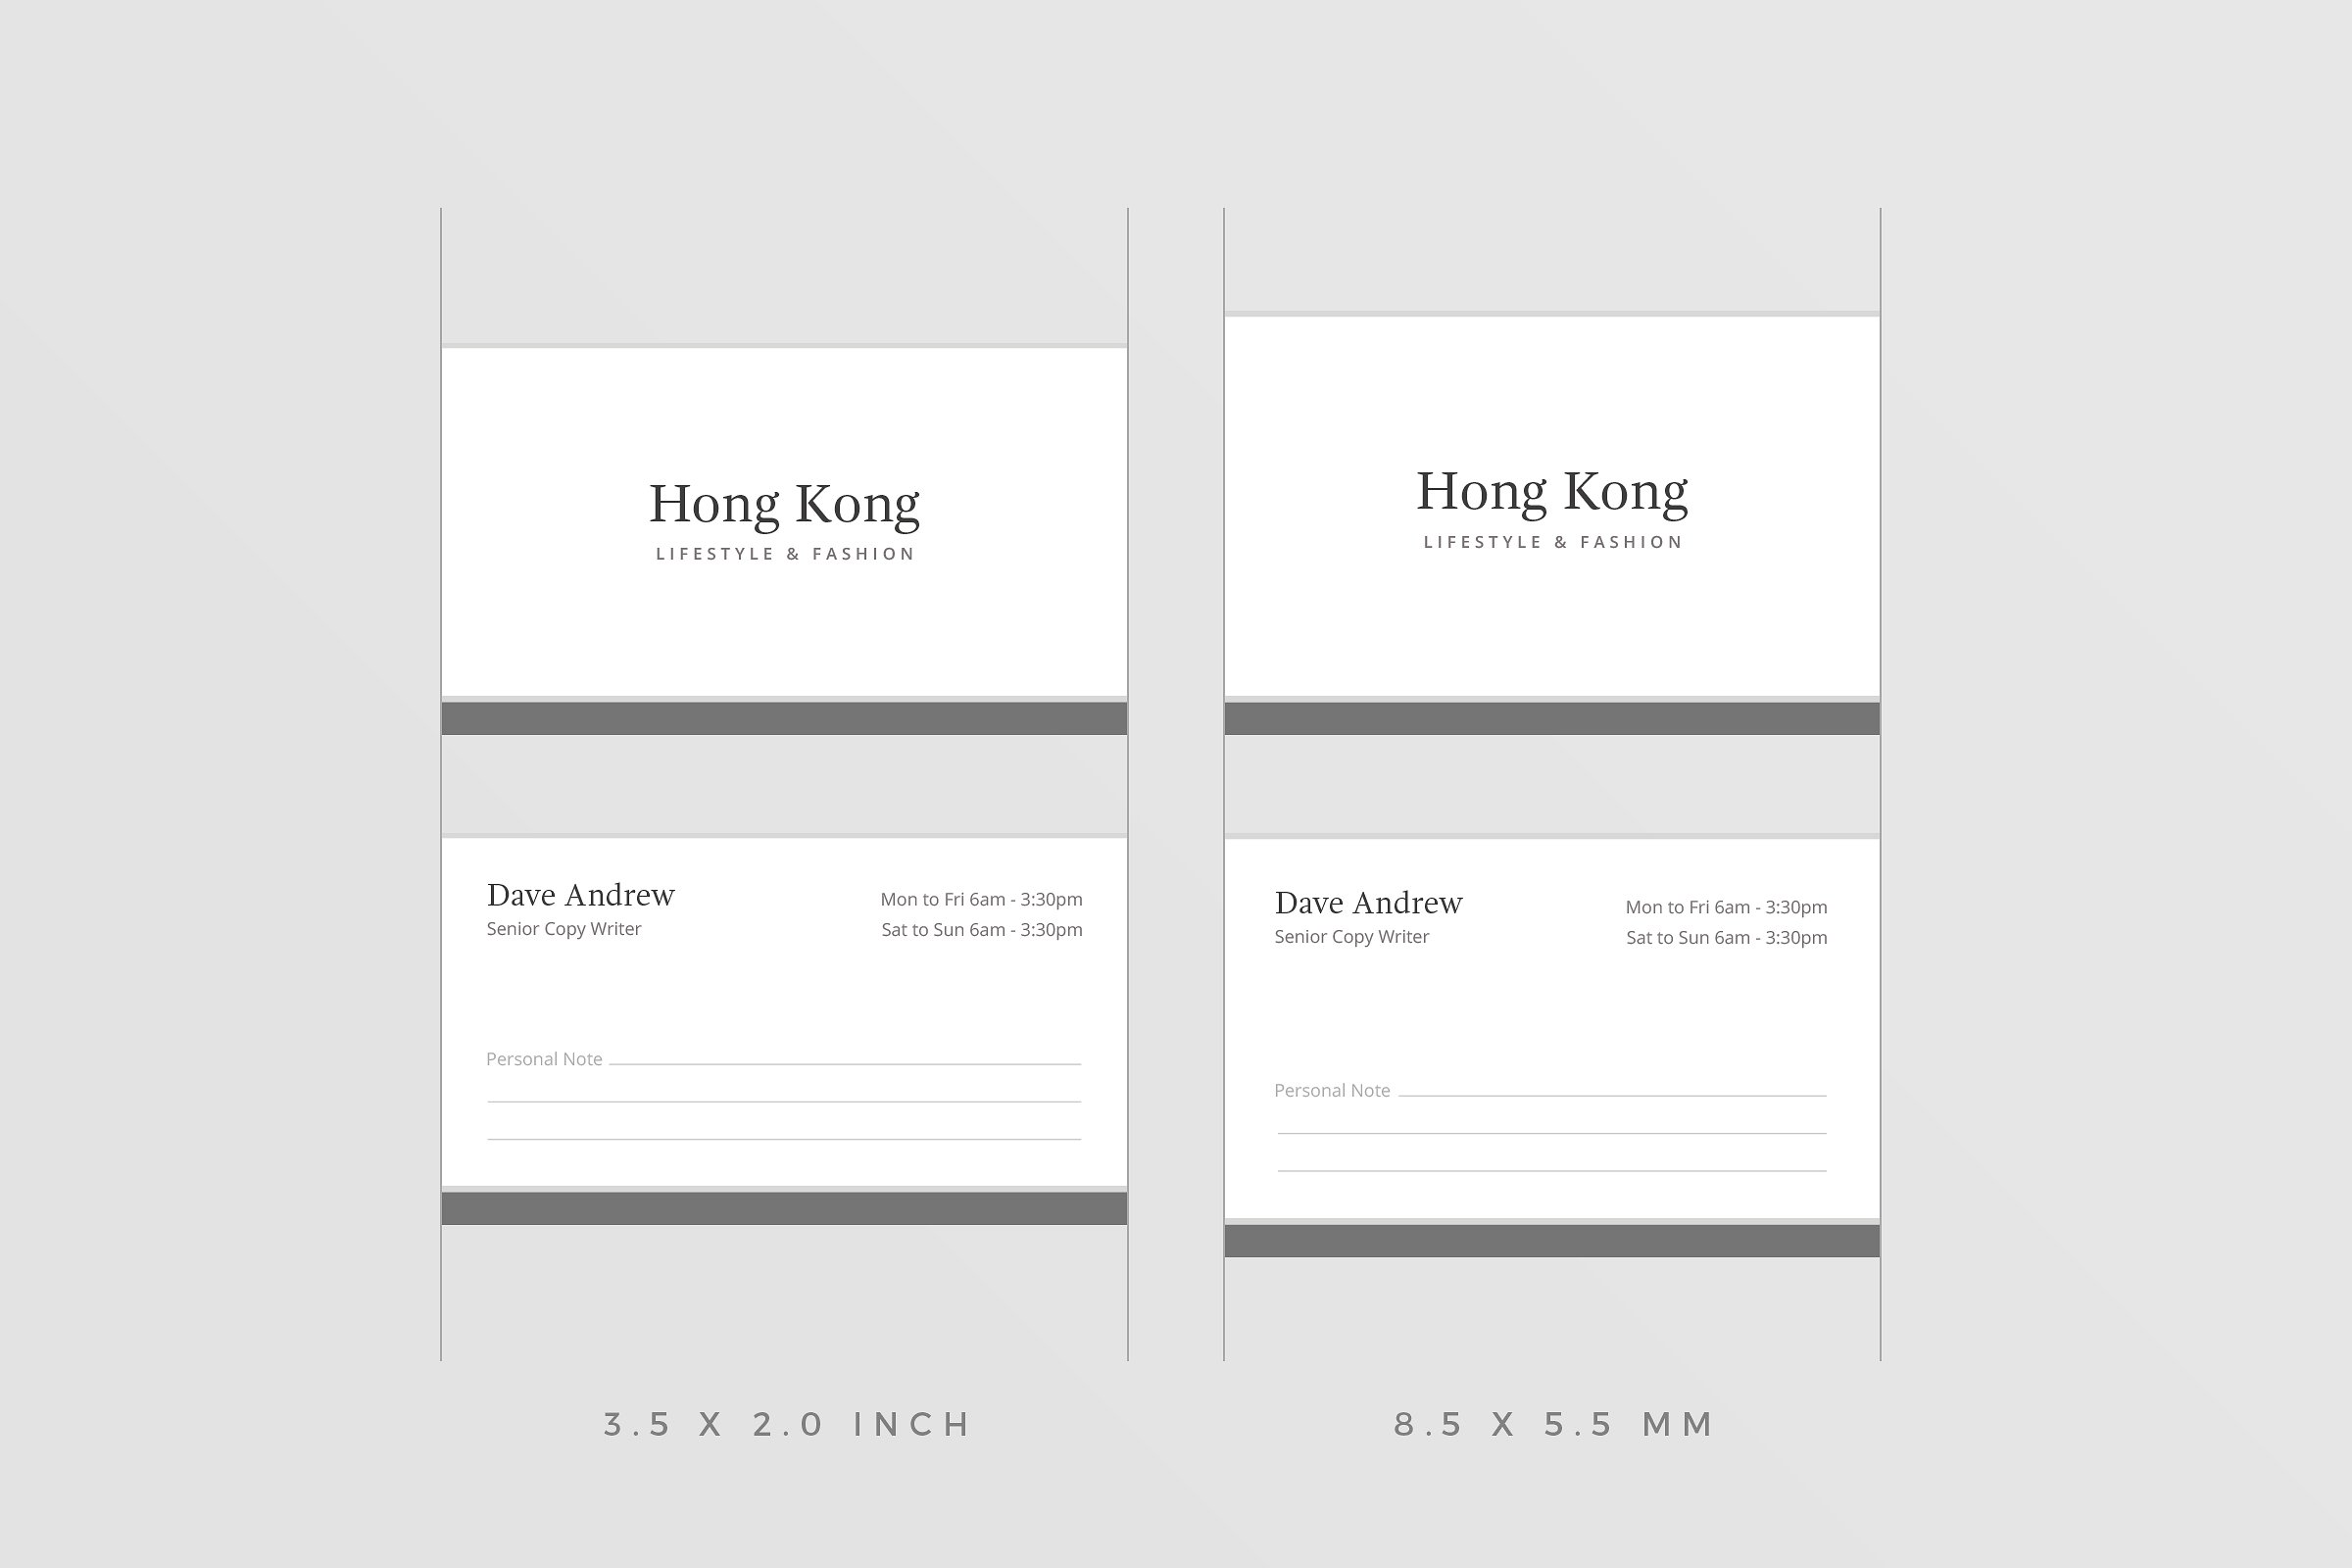 极简主义企业名片设计模板4 Hong Kong Business Card插图4